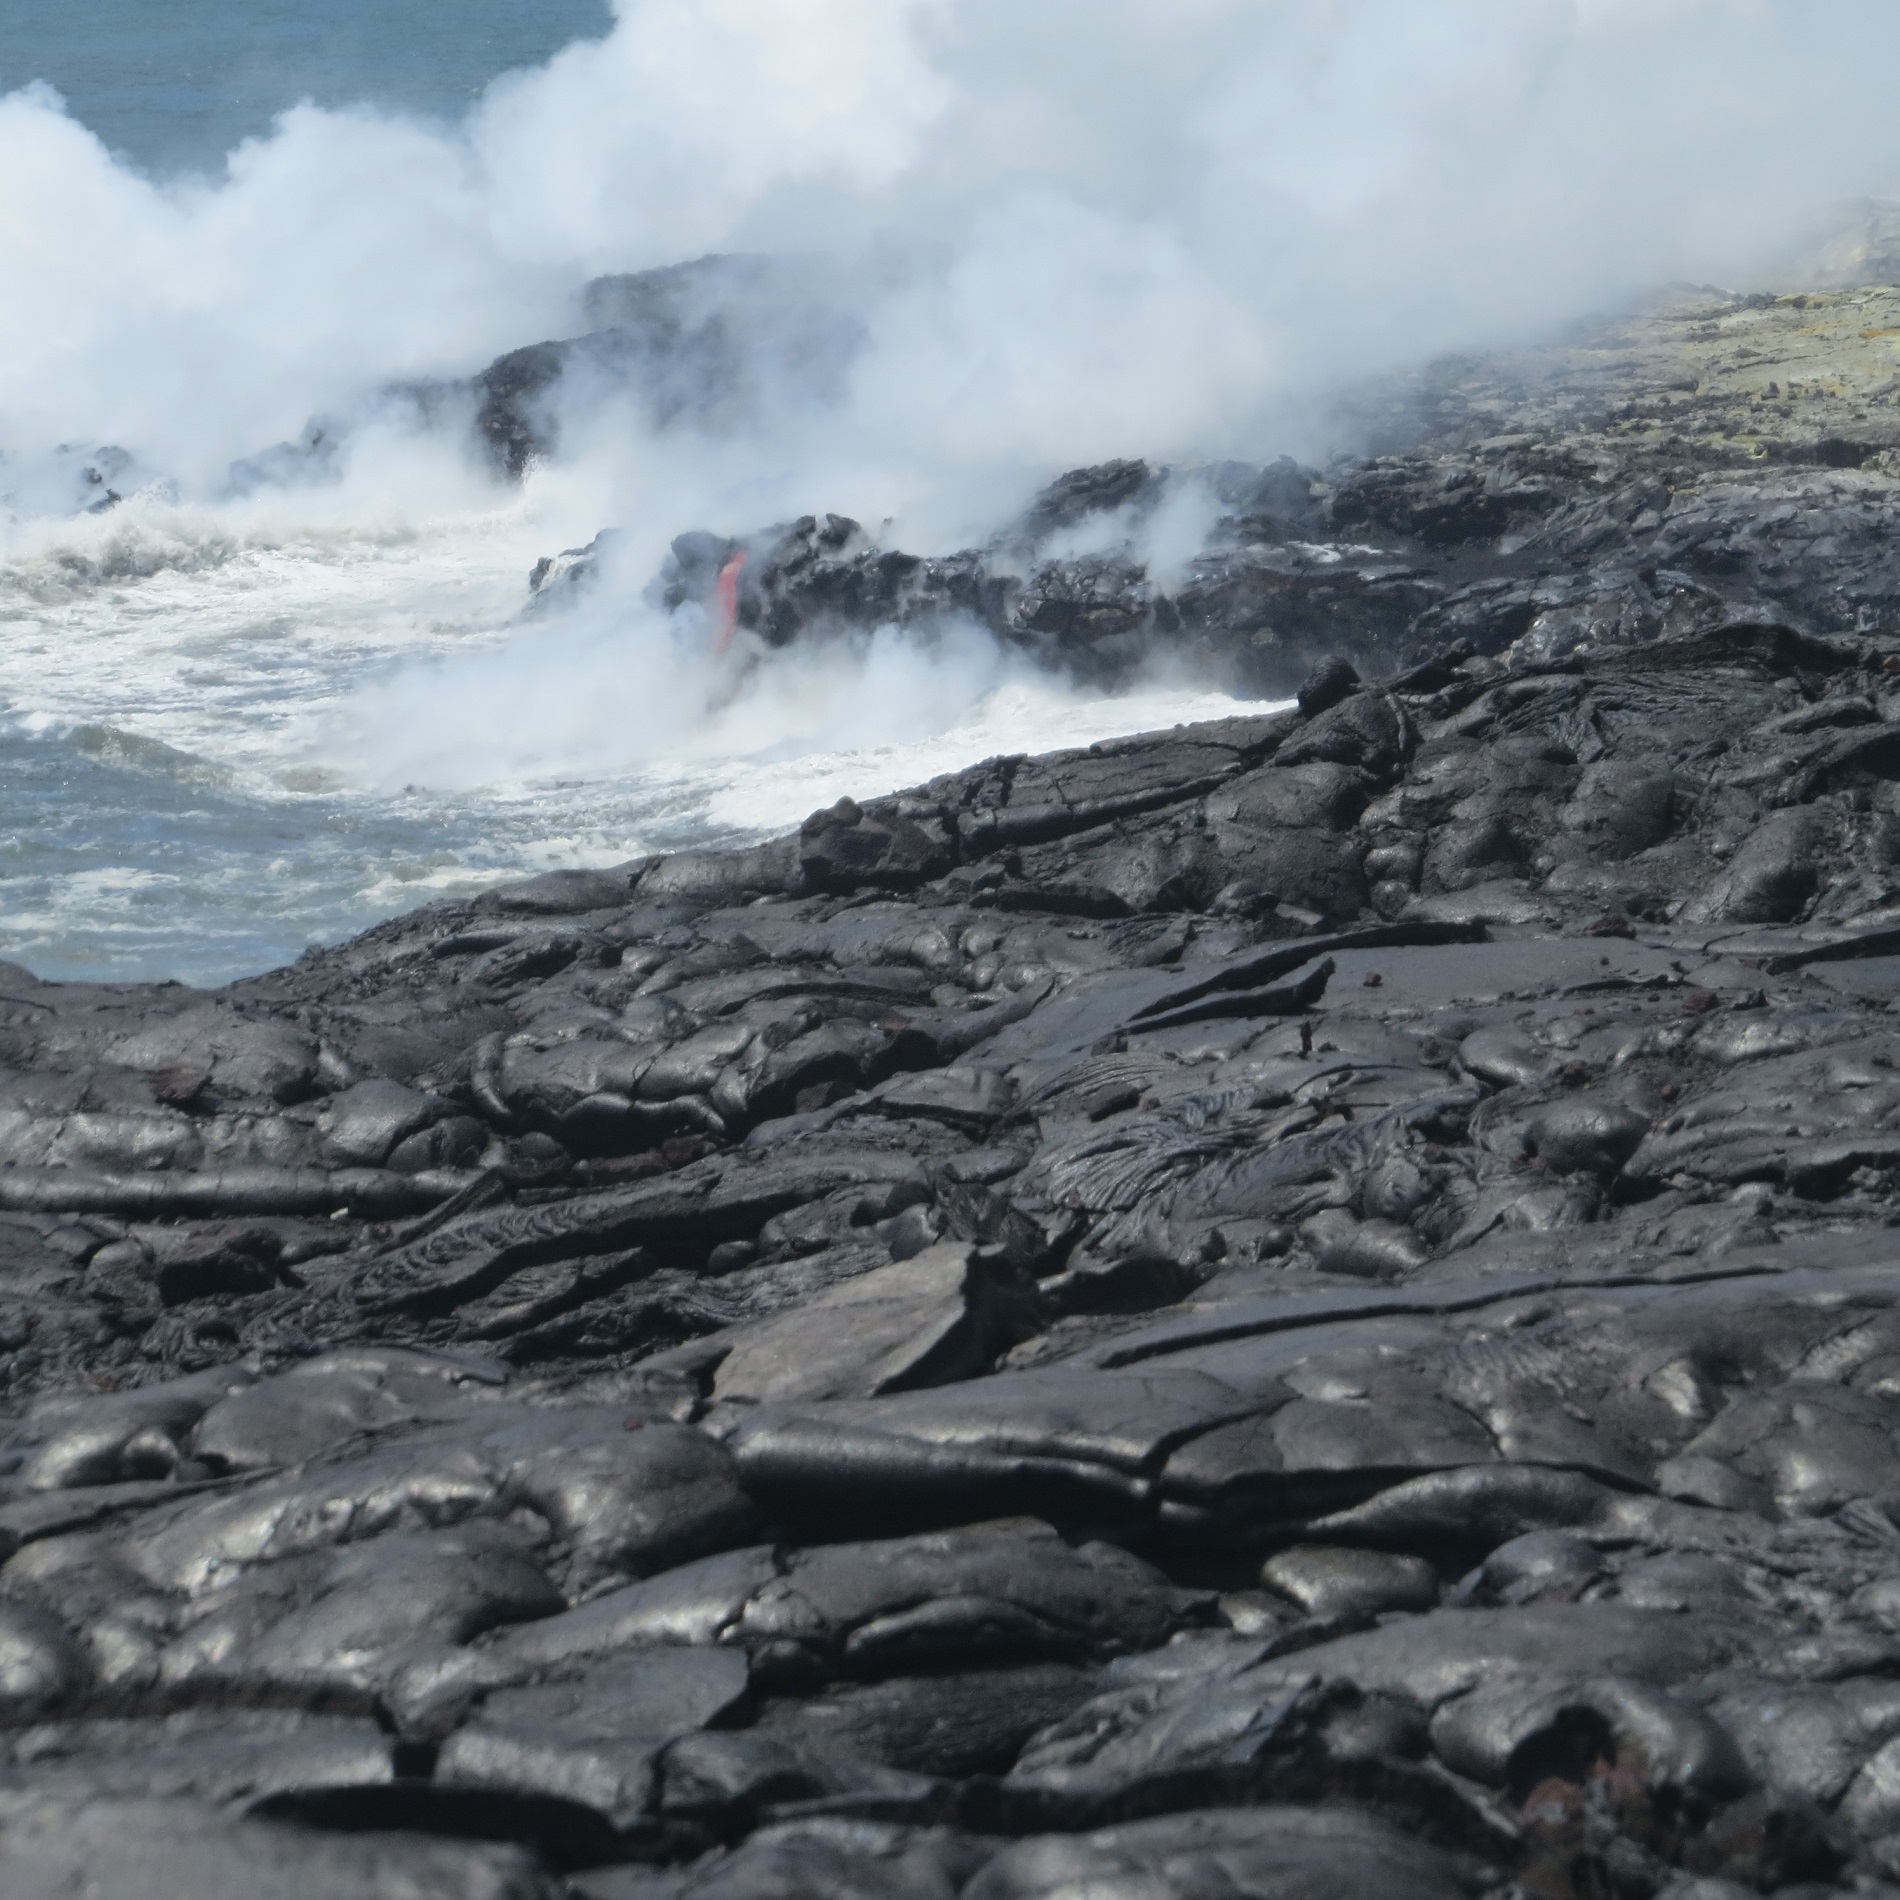 a lava flow on a rocky beach